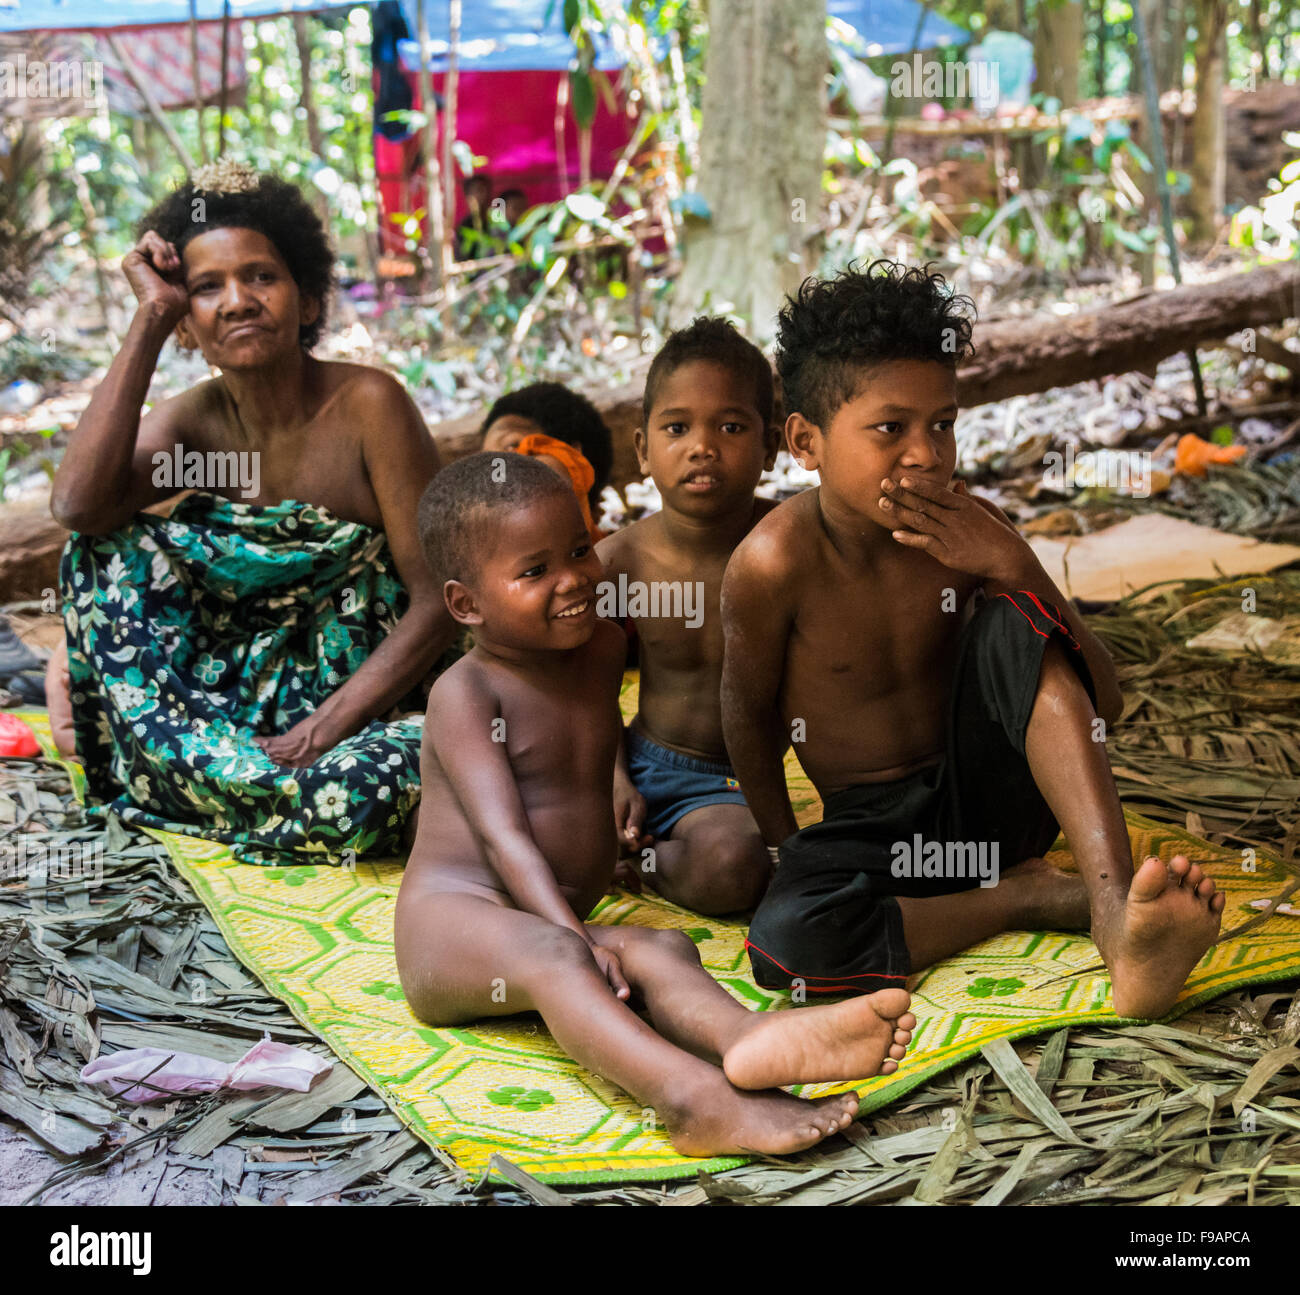 Frau und Kinder, Eingeborene Orang Asil, sitzen auf dem Boden im Dschungel, indigene Völker, tropischer Regenwald Stockfoto